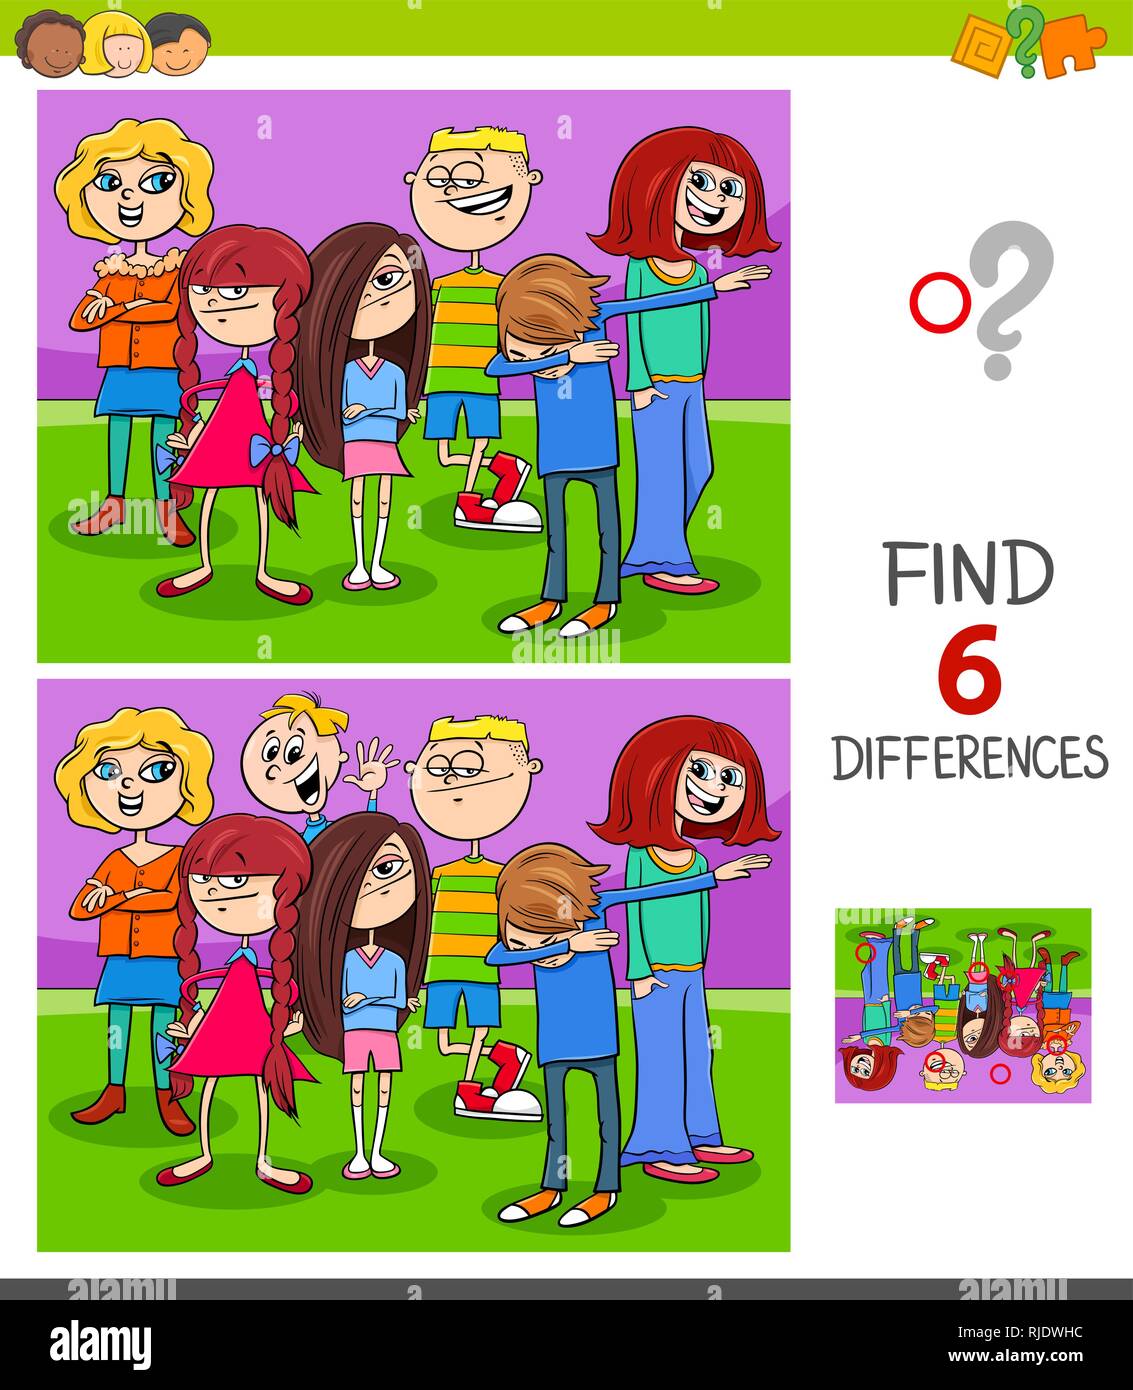 Ilustración de dibujos animados de encontrar seis diferencias entre las  imágenes de juegos educativos para niños con niños o adolescentes grupo  Imagen Vector de stock - Alamy